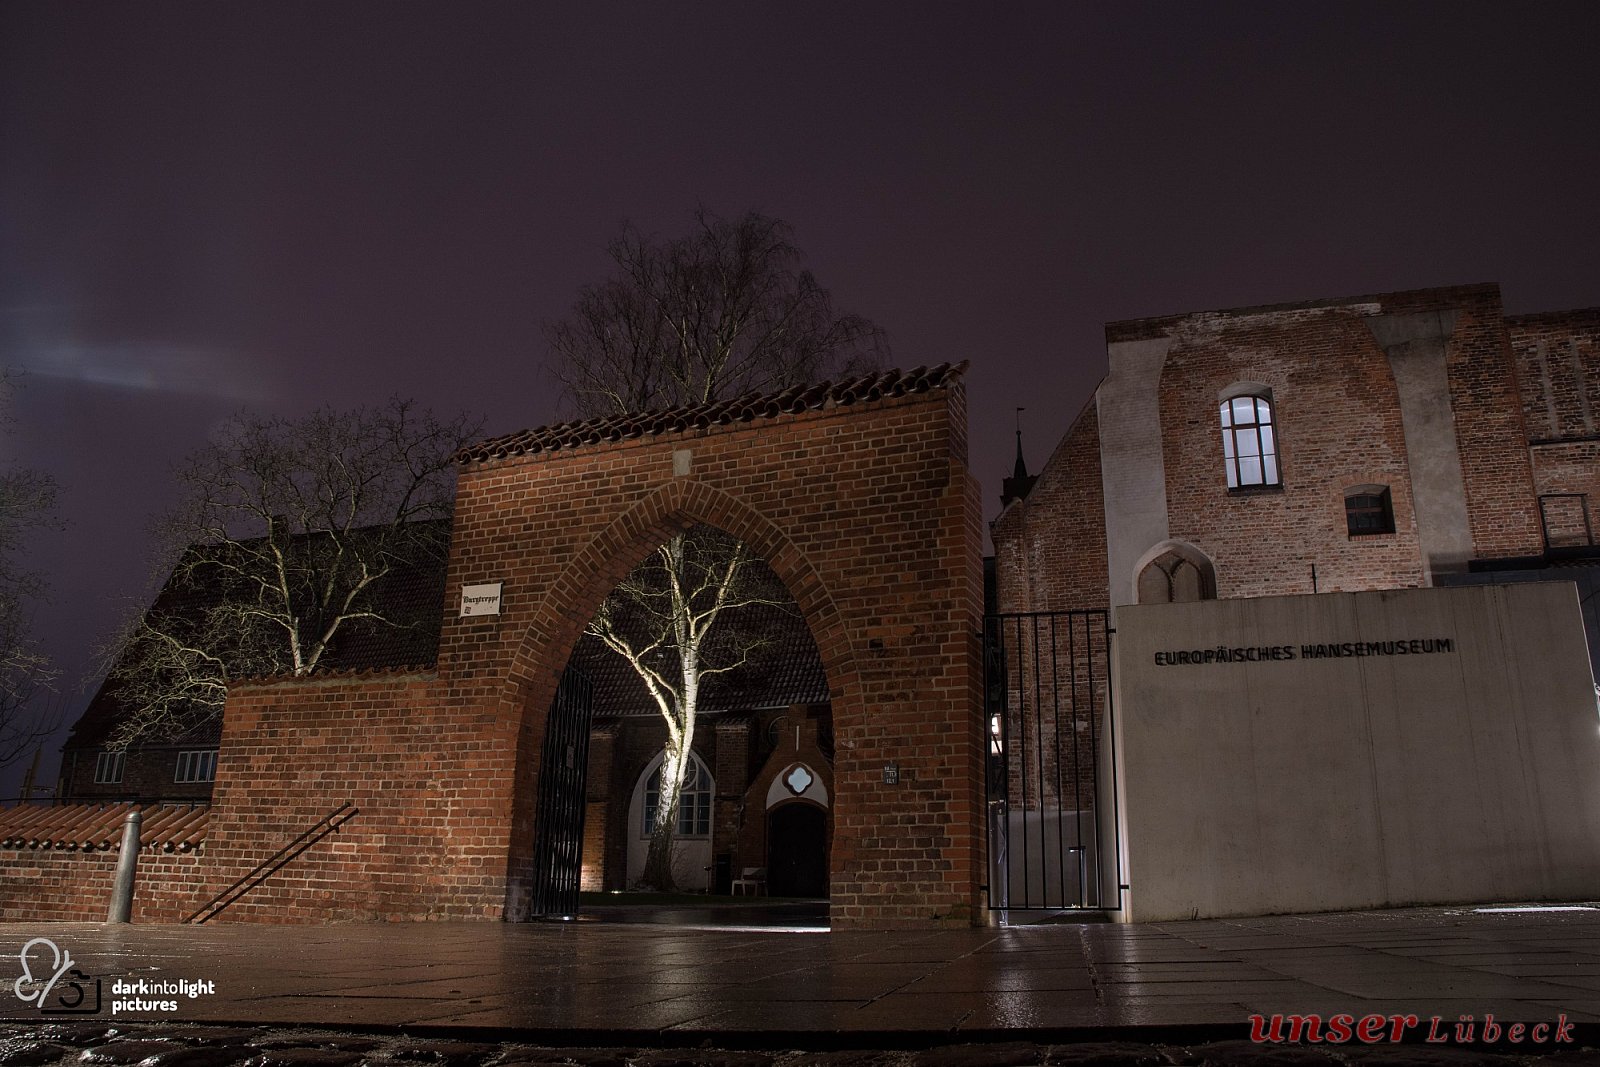 Hansemuseum bei Nacht - Die schönsten Fotos von unseren Lesern